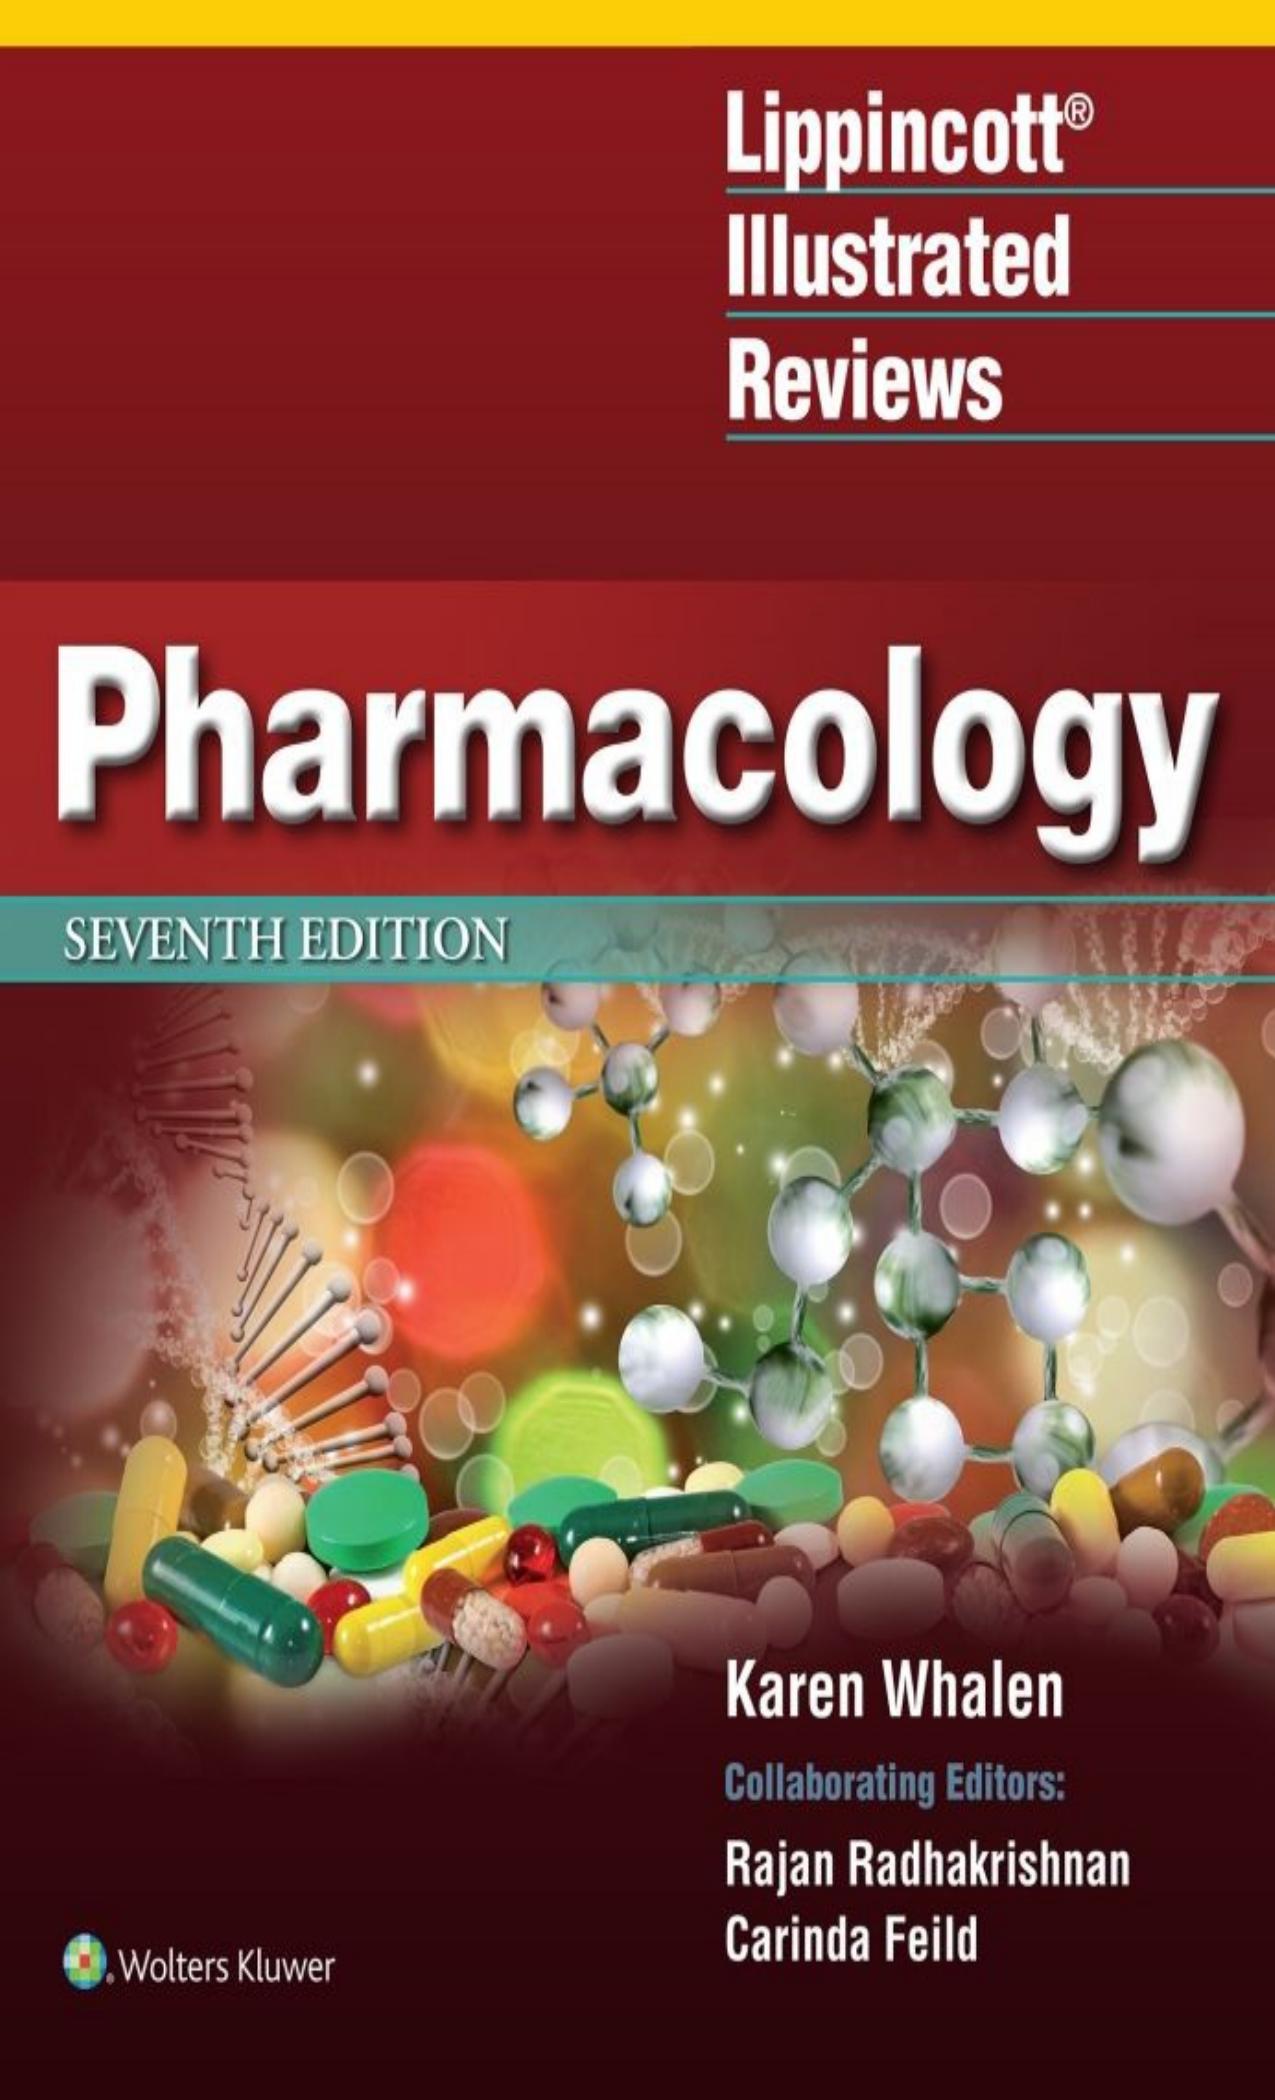 Lippincott Illustrated Reviews_ Pharmacology - Karen Whalen.jpg